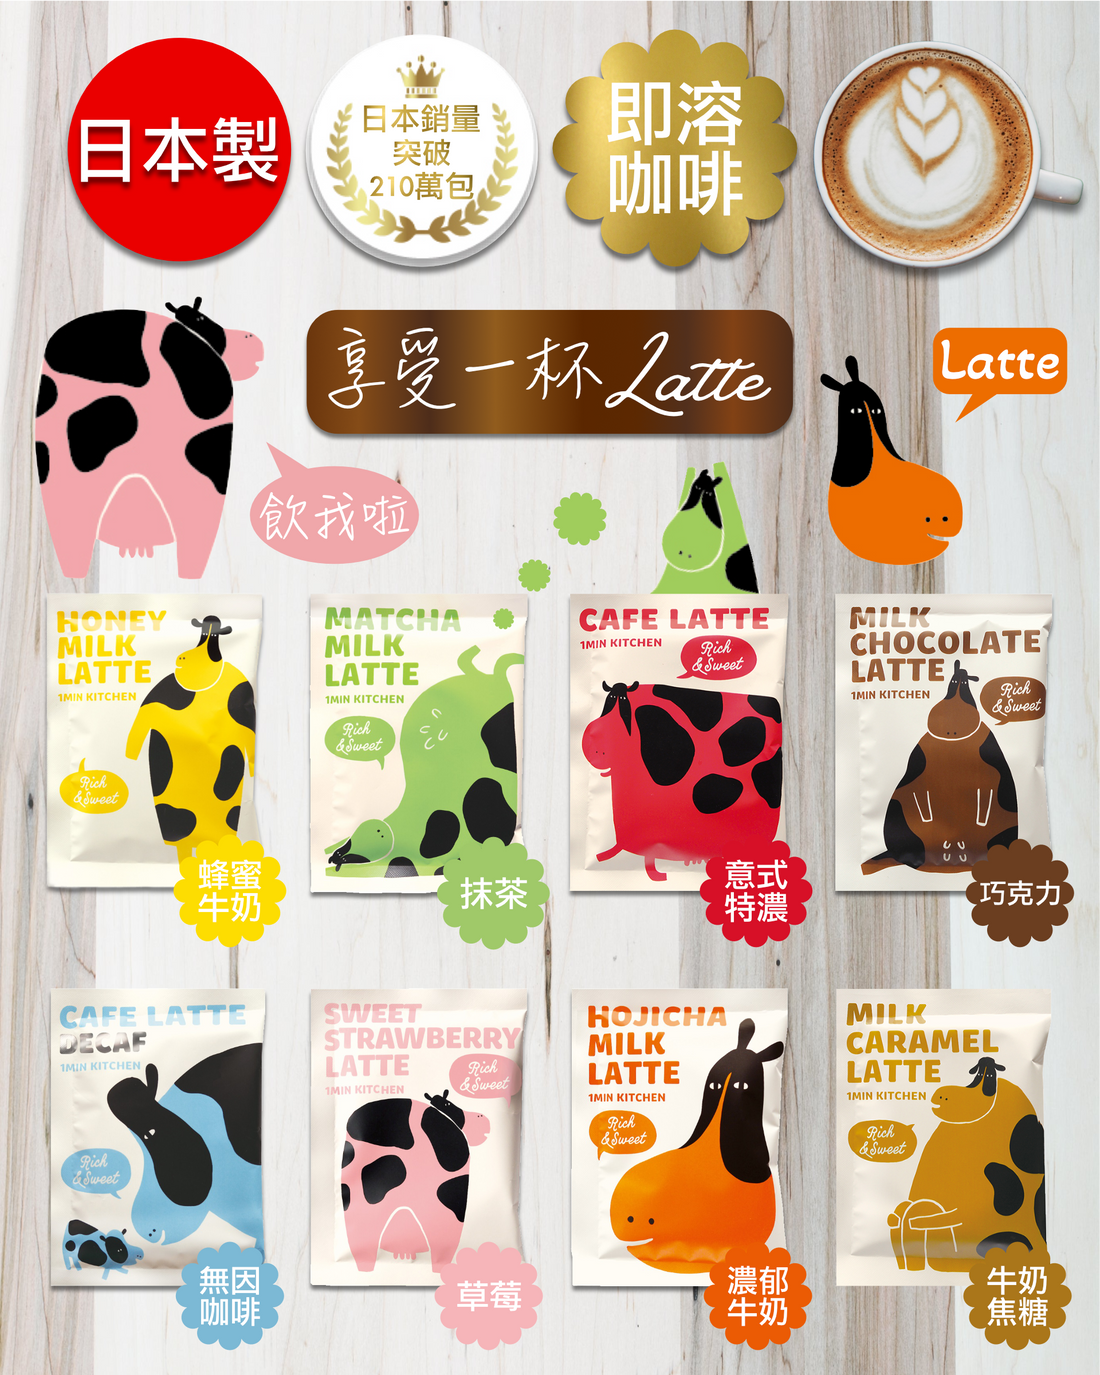 日本即溶咖啡27403af4-f4e3-4833-9189-9868705845f7